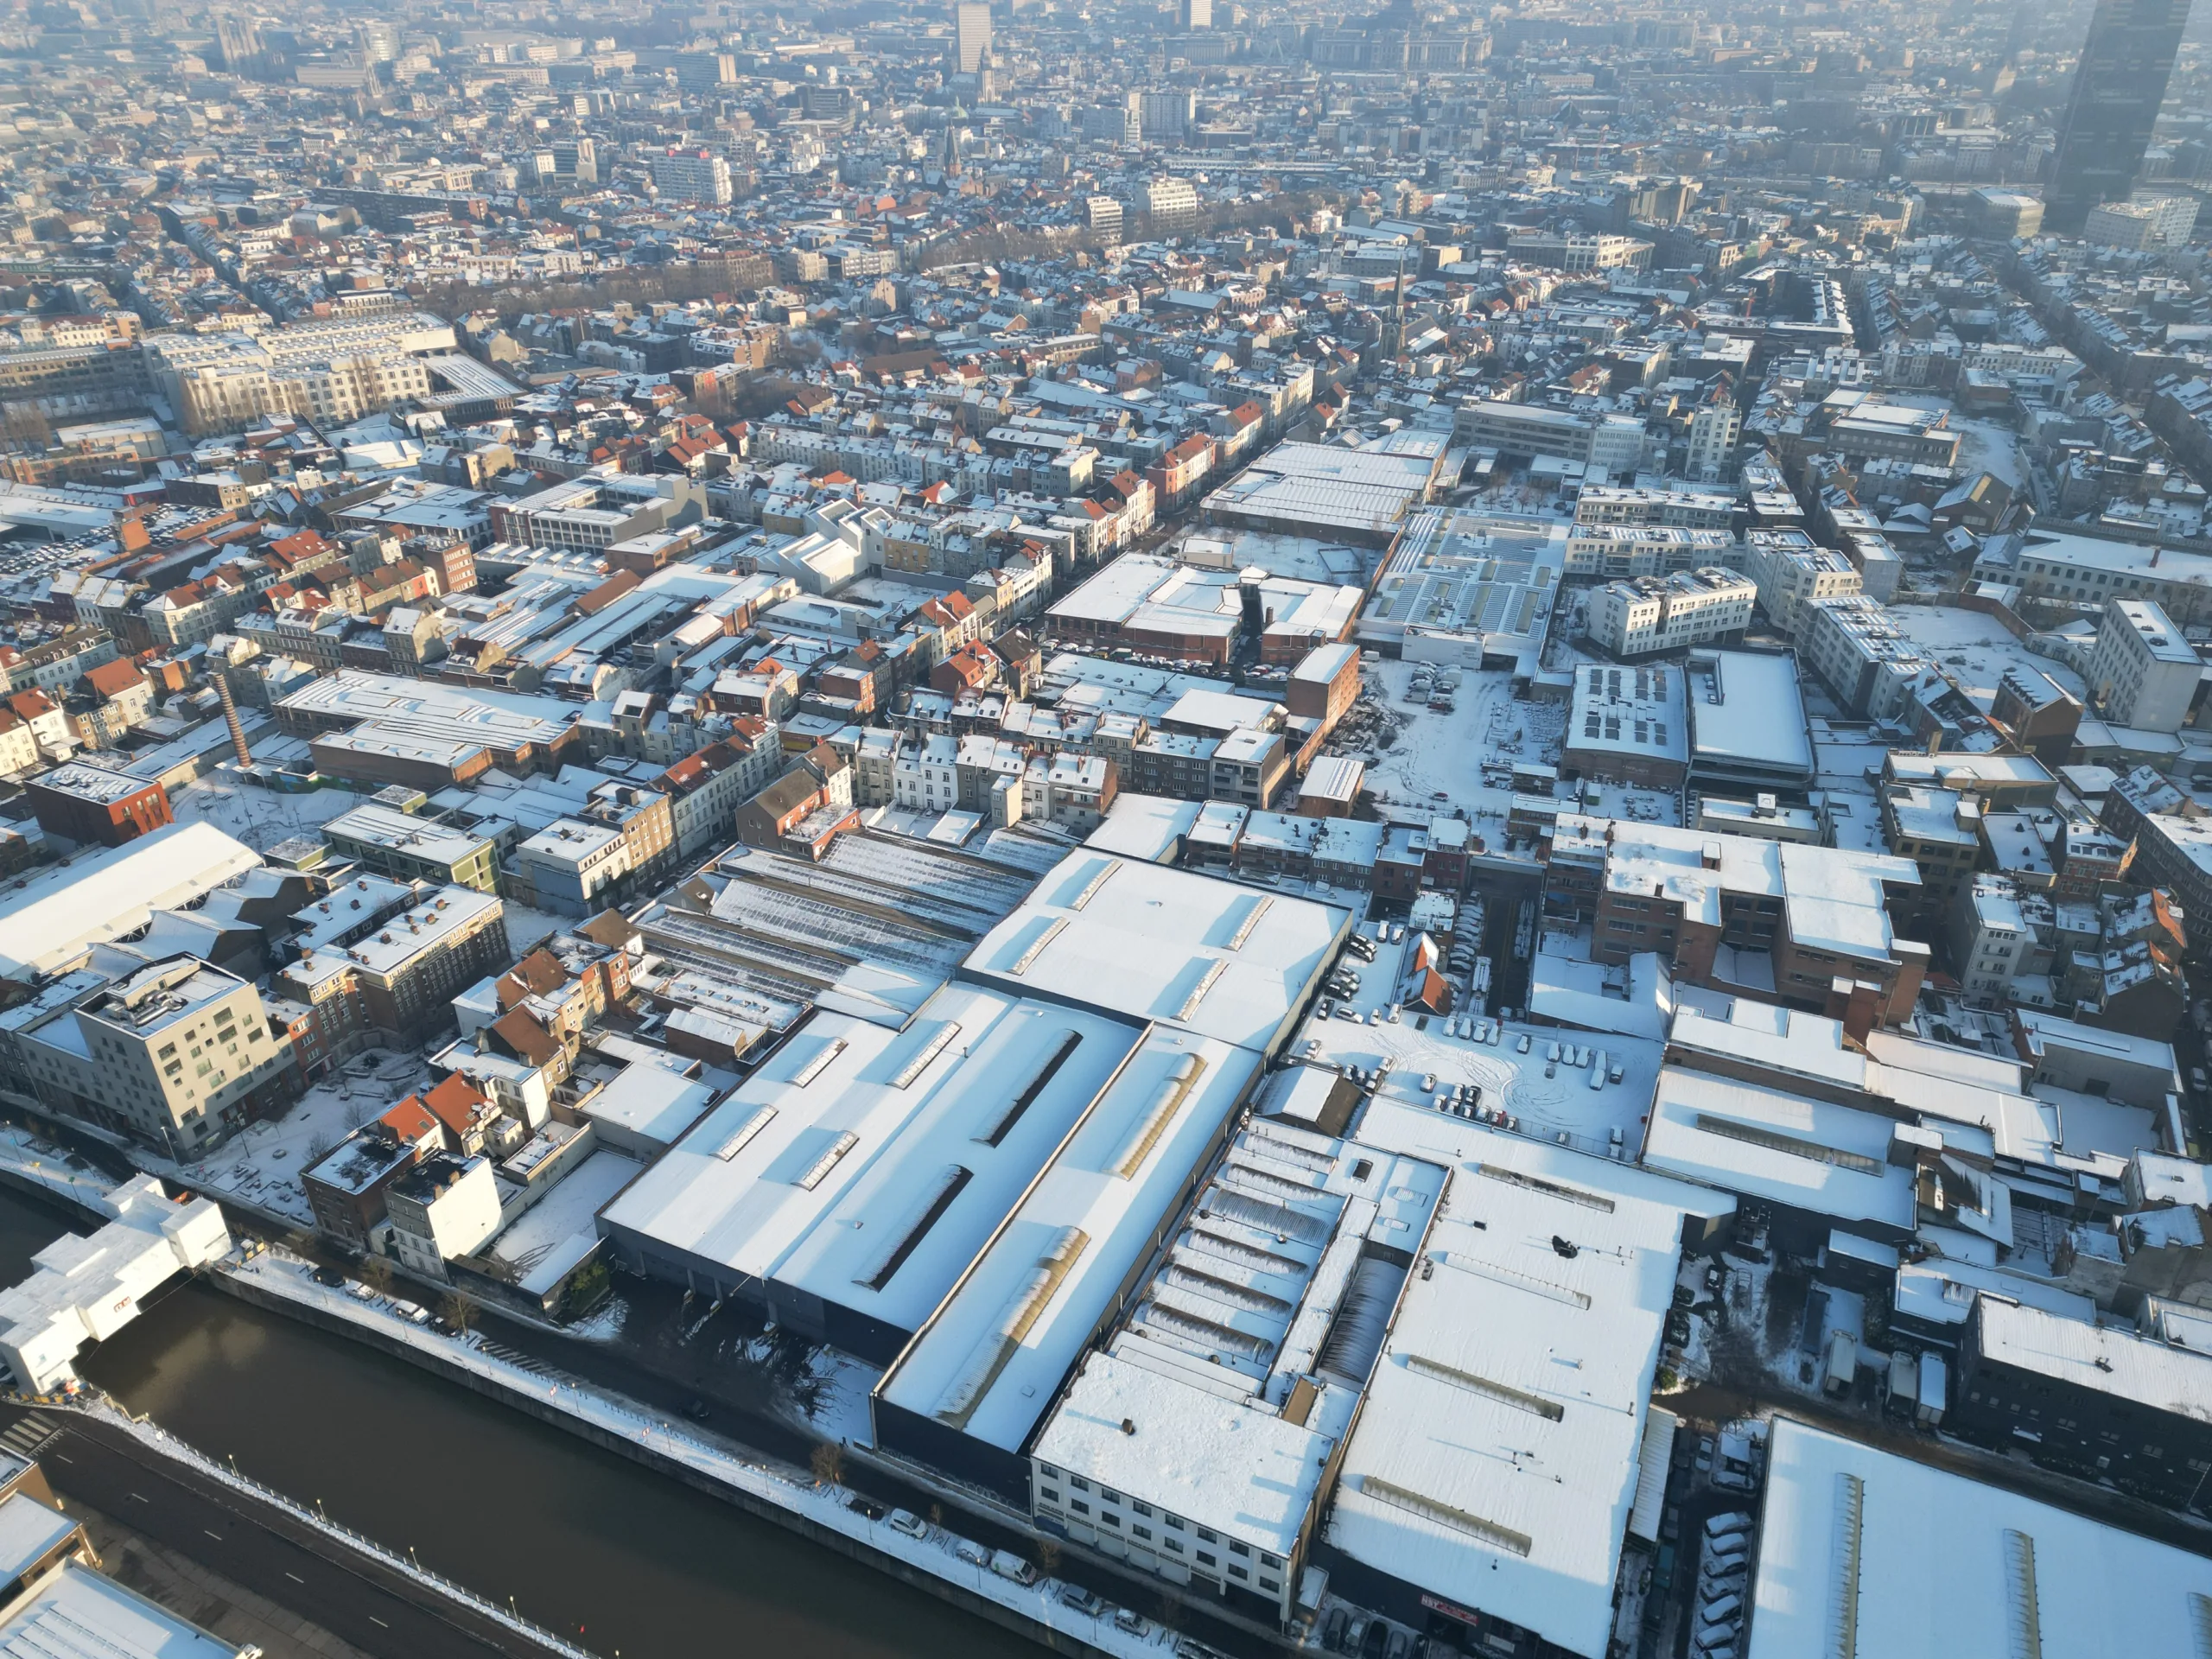 Een luchtfoto van een industriegebied langs het kanaal, gelegen in het hartje van Molenbeek. Talloze fabrieken en bedrijven strekken zich uit langs de waterweg, waar bedrijvigheid en handel samenkomen in deze levendige buurt